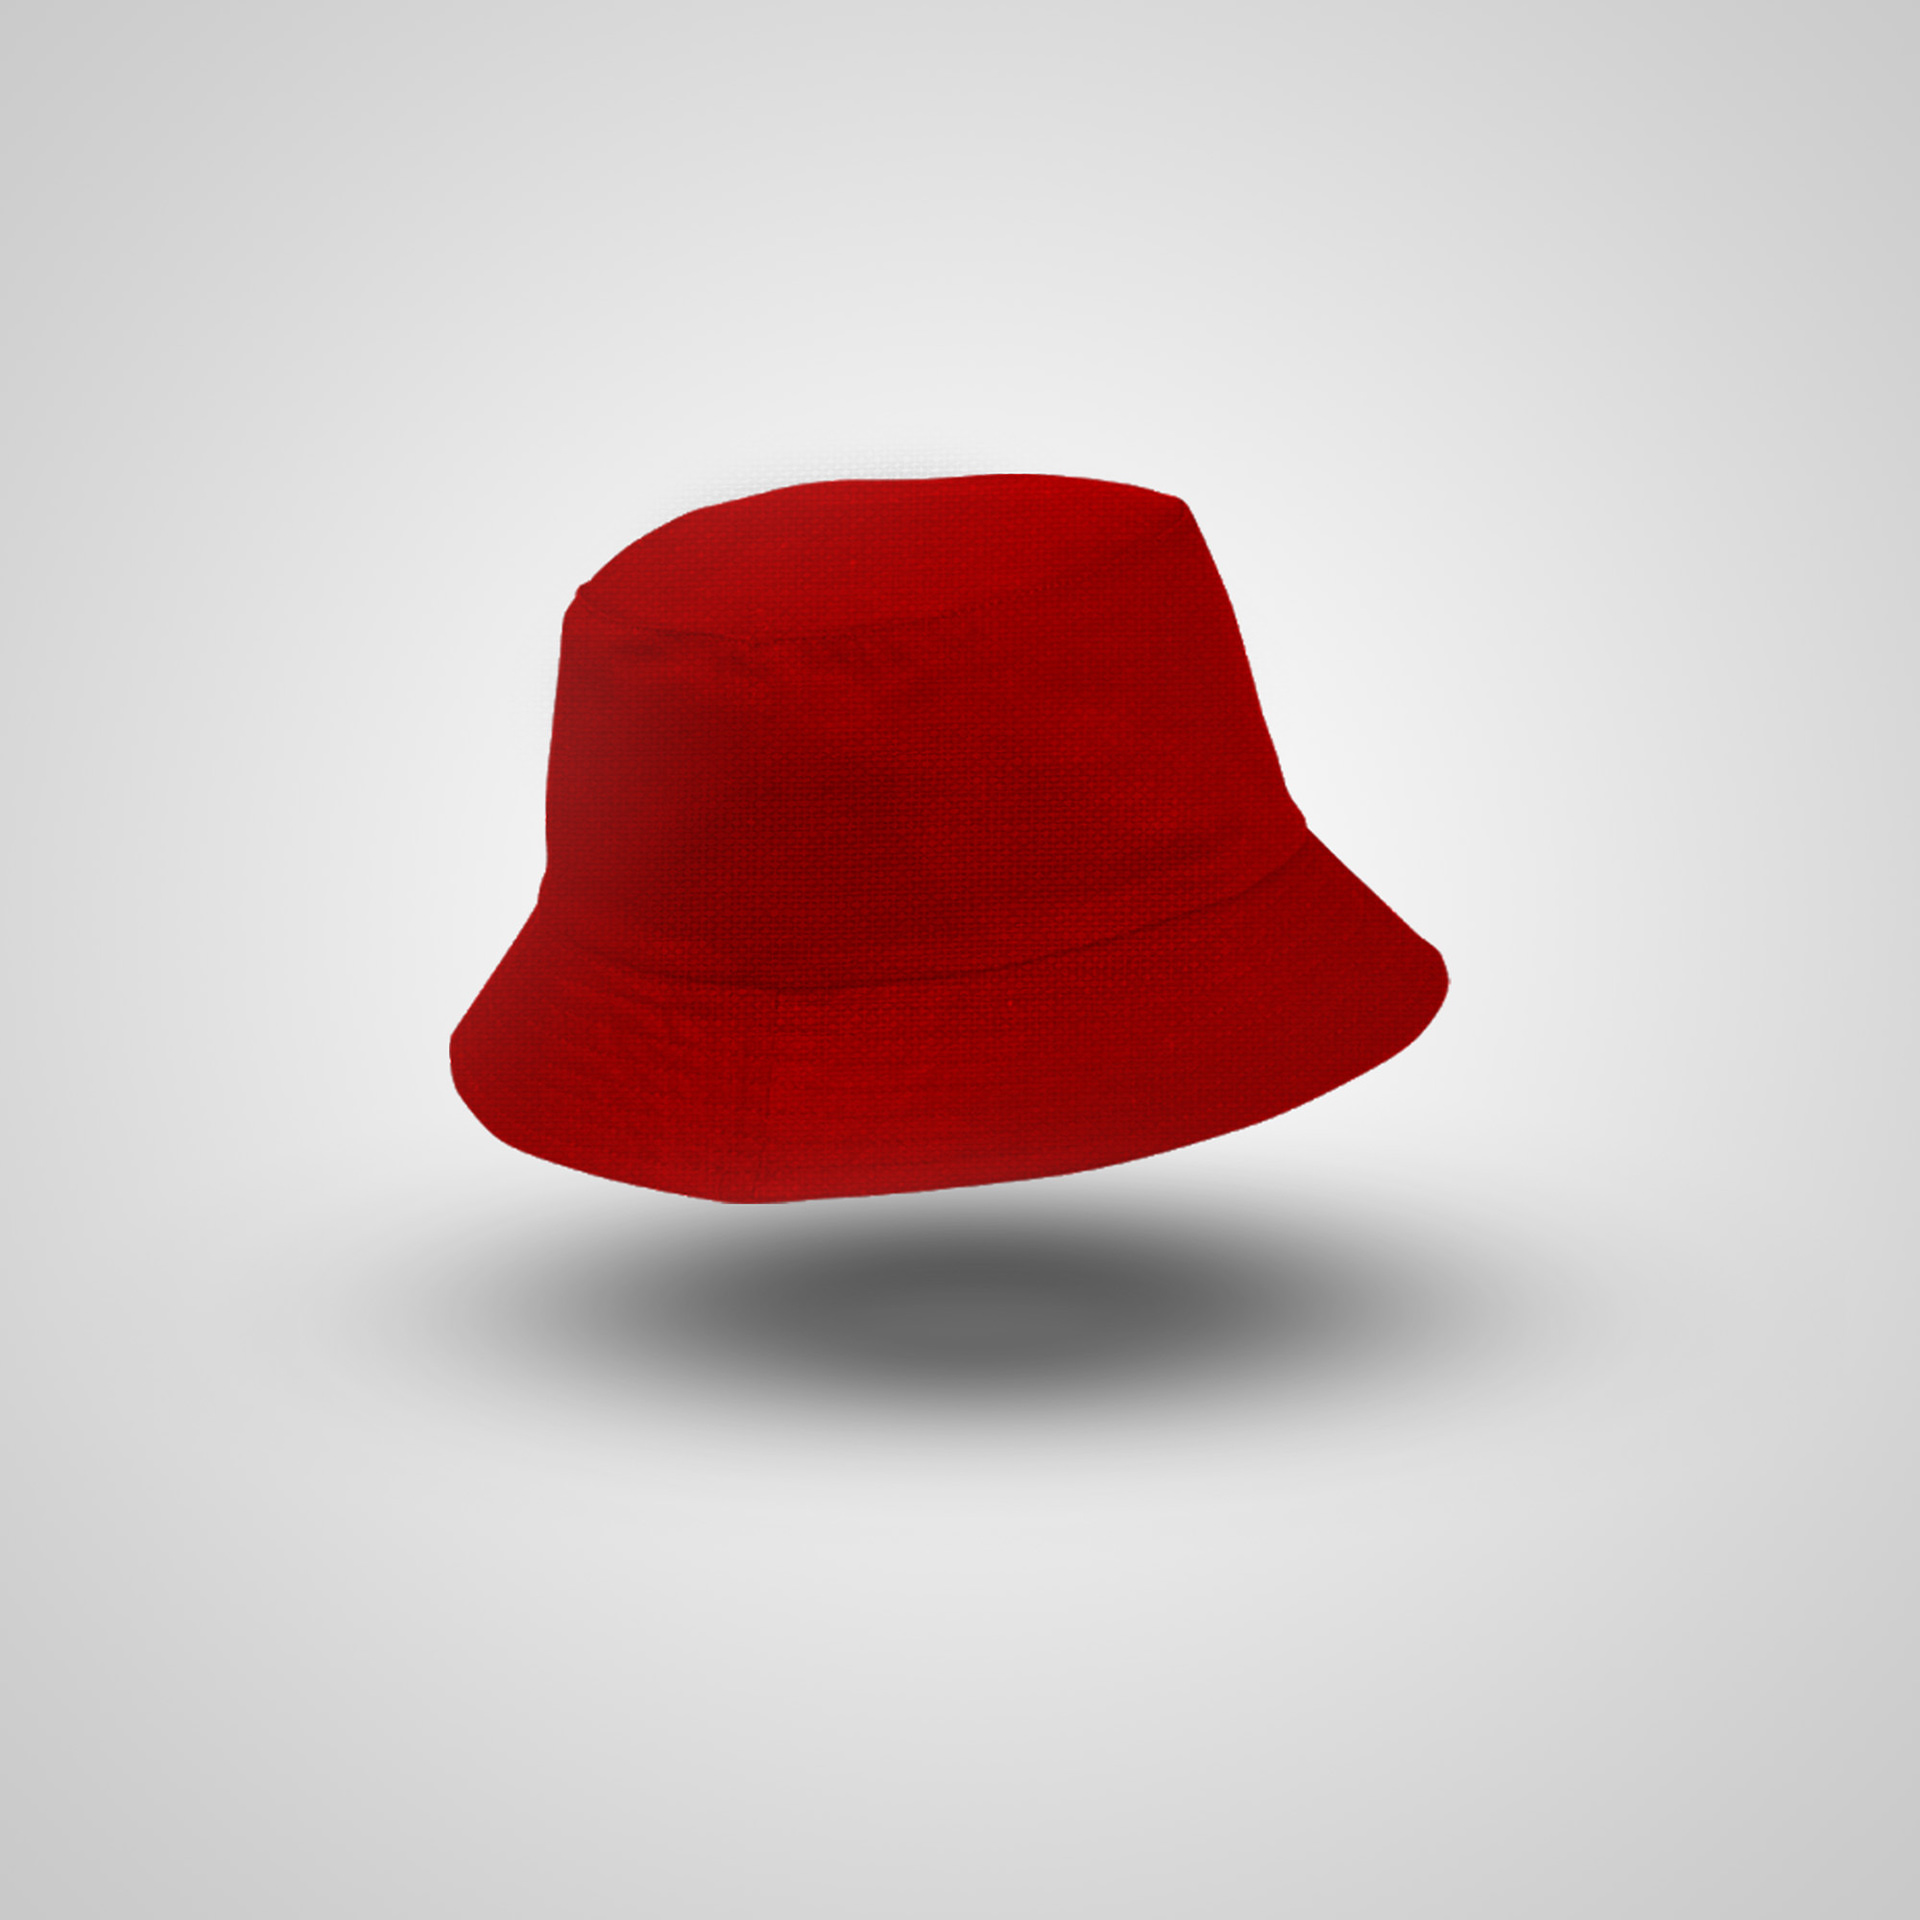 2k FREE Bucket Hat PSD Mockup Template on Behance